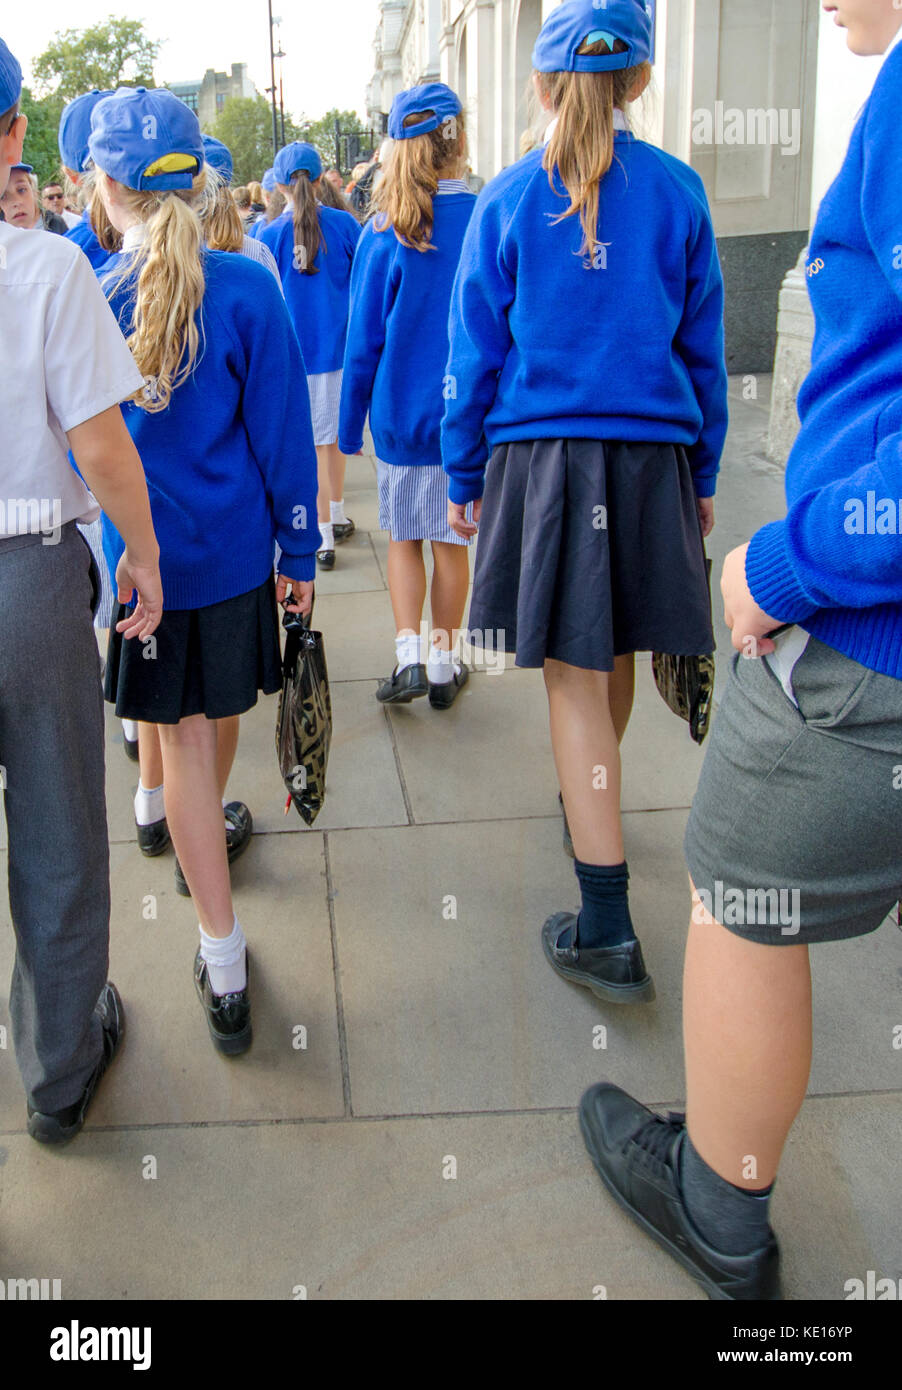 Londres, Angleterre, Royaume-Uni. Les enfants de l'école primaire en uniforme bleu marchant à travers la place du Parlement Banque D'Images